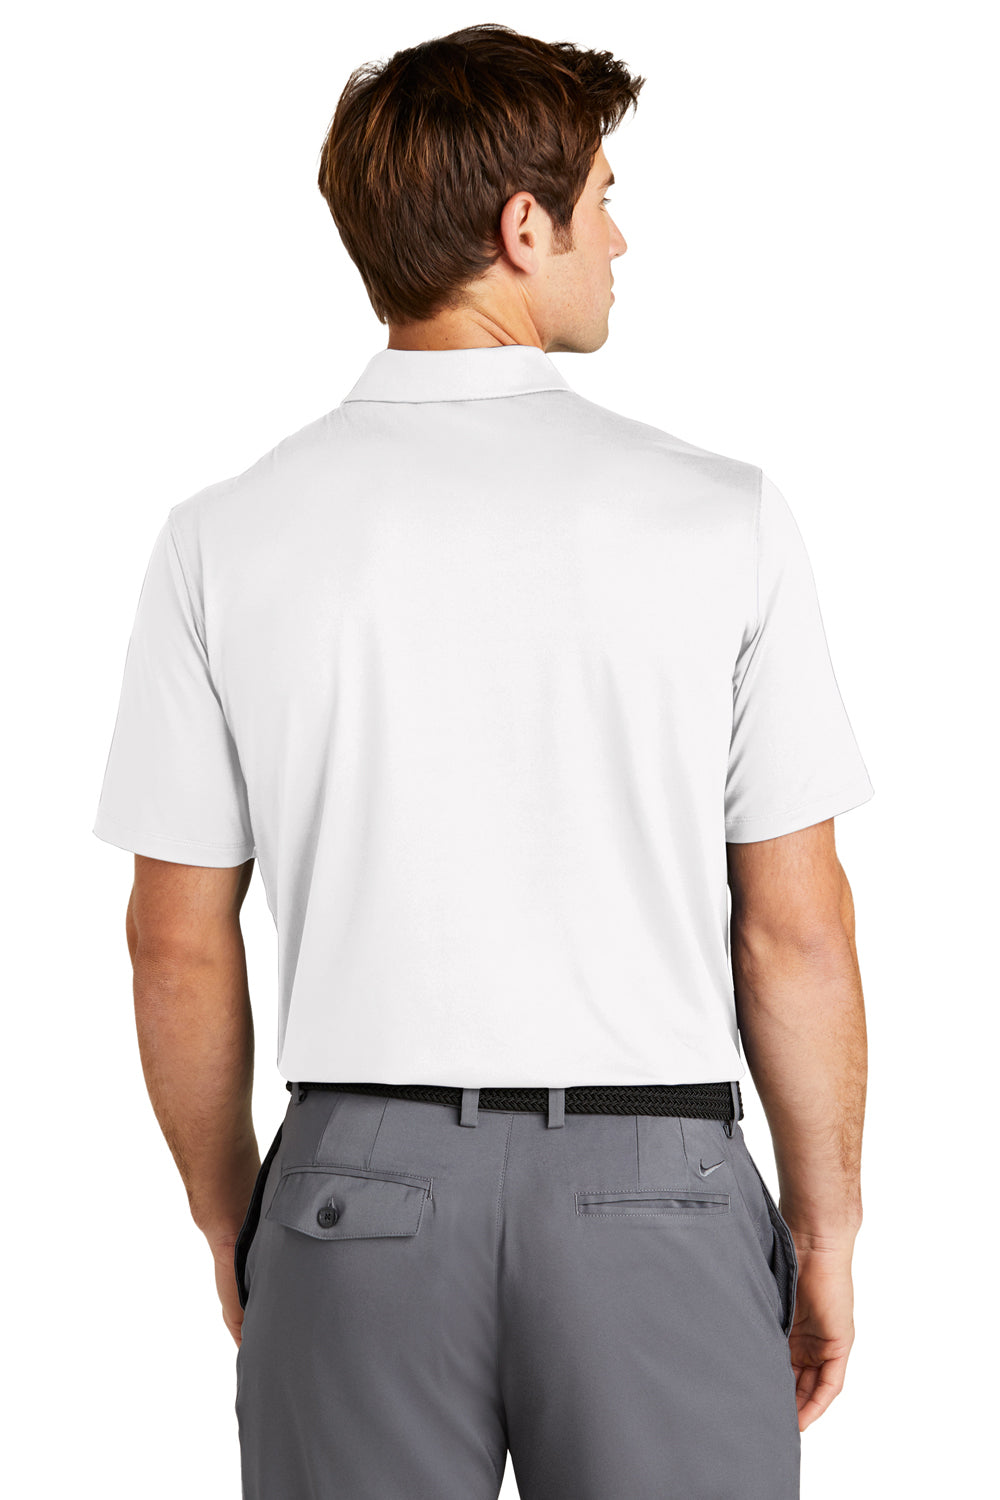 Nike NKDC2108 Mens Vapor Dri-Fit Moisture Wicking Short Sleeve Polo Shirt White Model Back